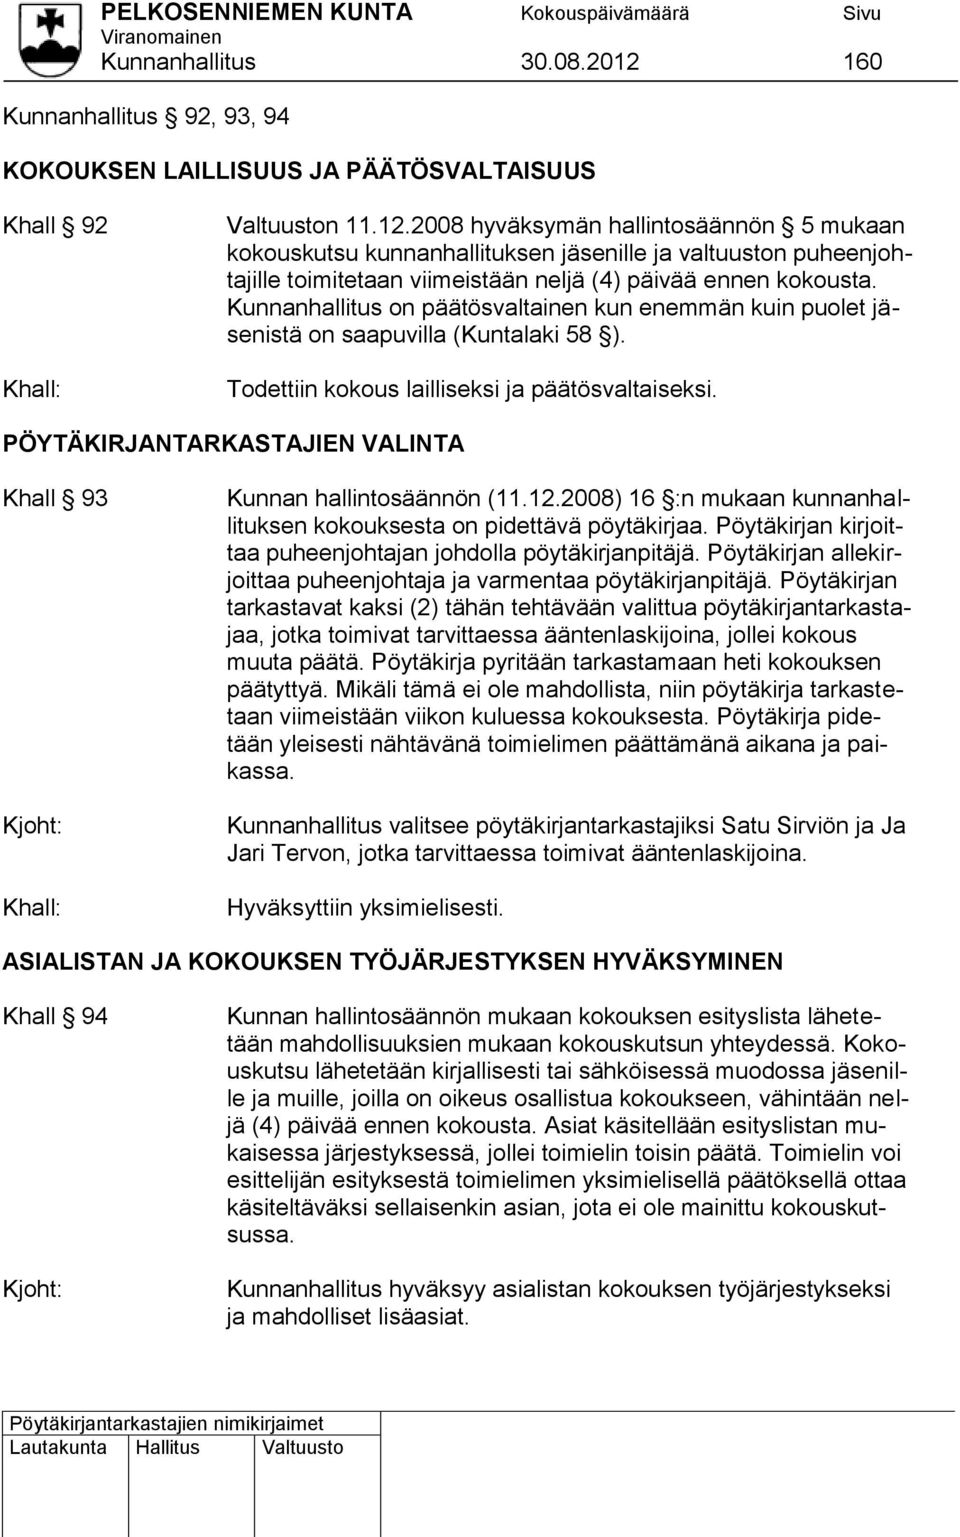 PÖYTÄKIRJANTARKASTAJIEN VALINTA Khall 93 Kunnan hallintosäännön (11.12.2008) 16 :n mukaan kunnanhallituksen kokouksesta on pidettävä pöytäkirjaa.